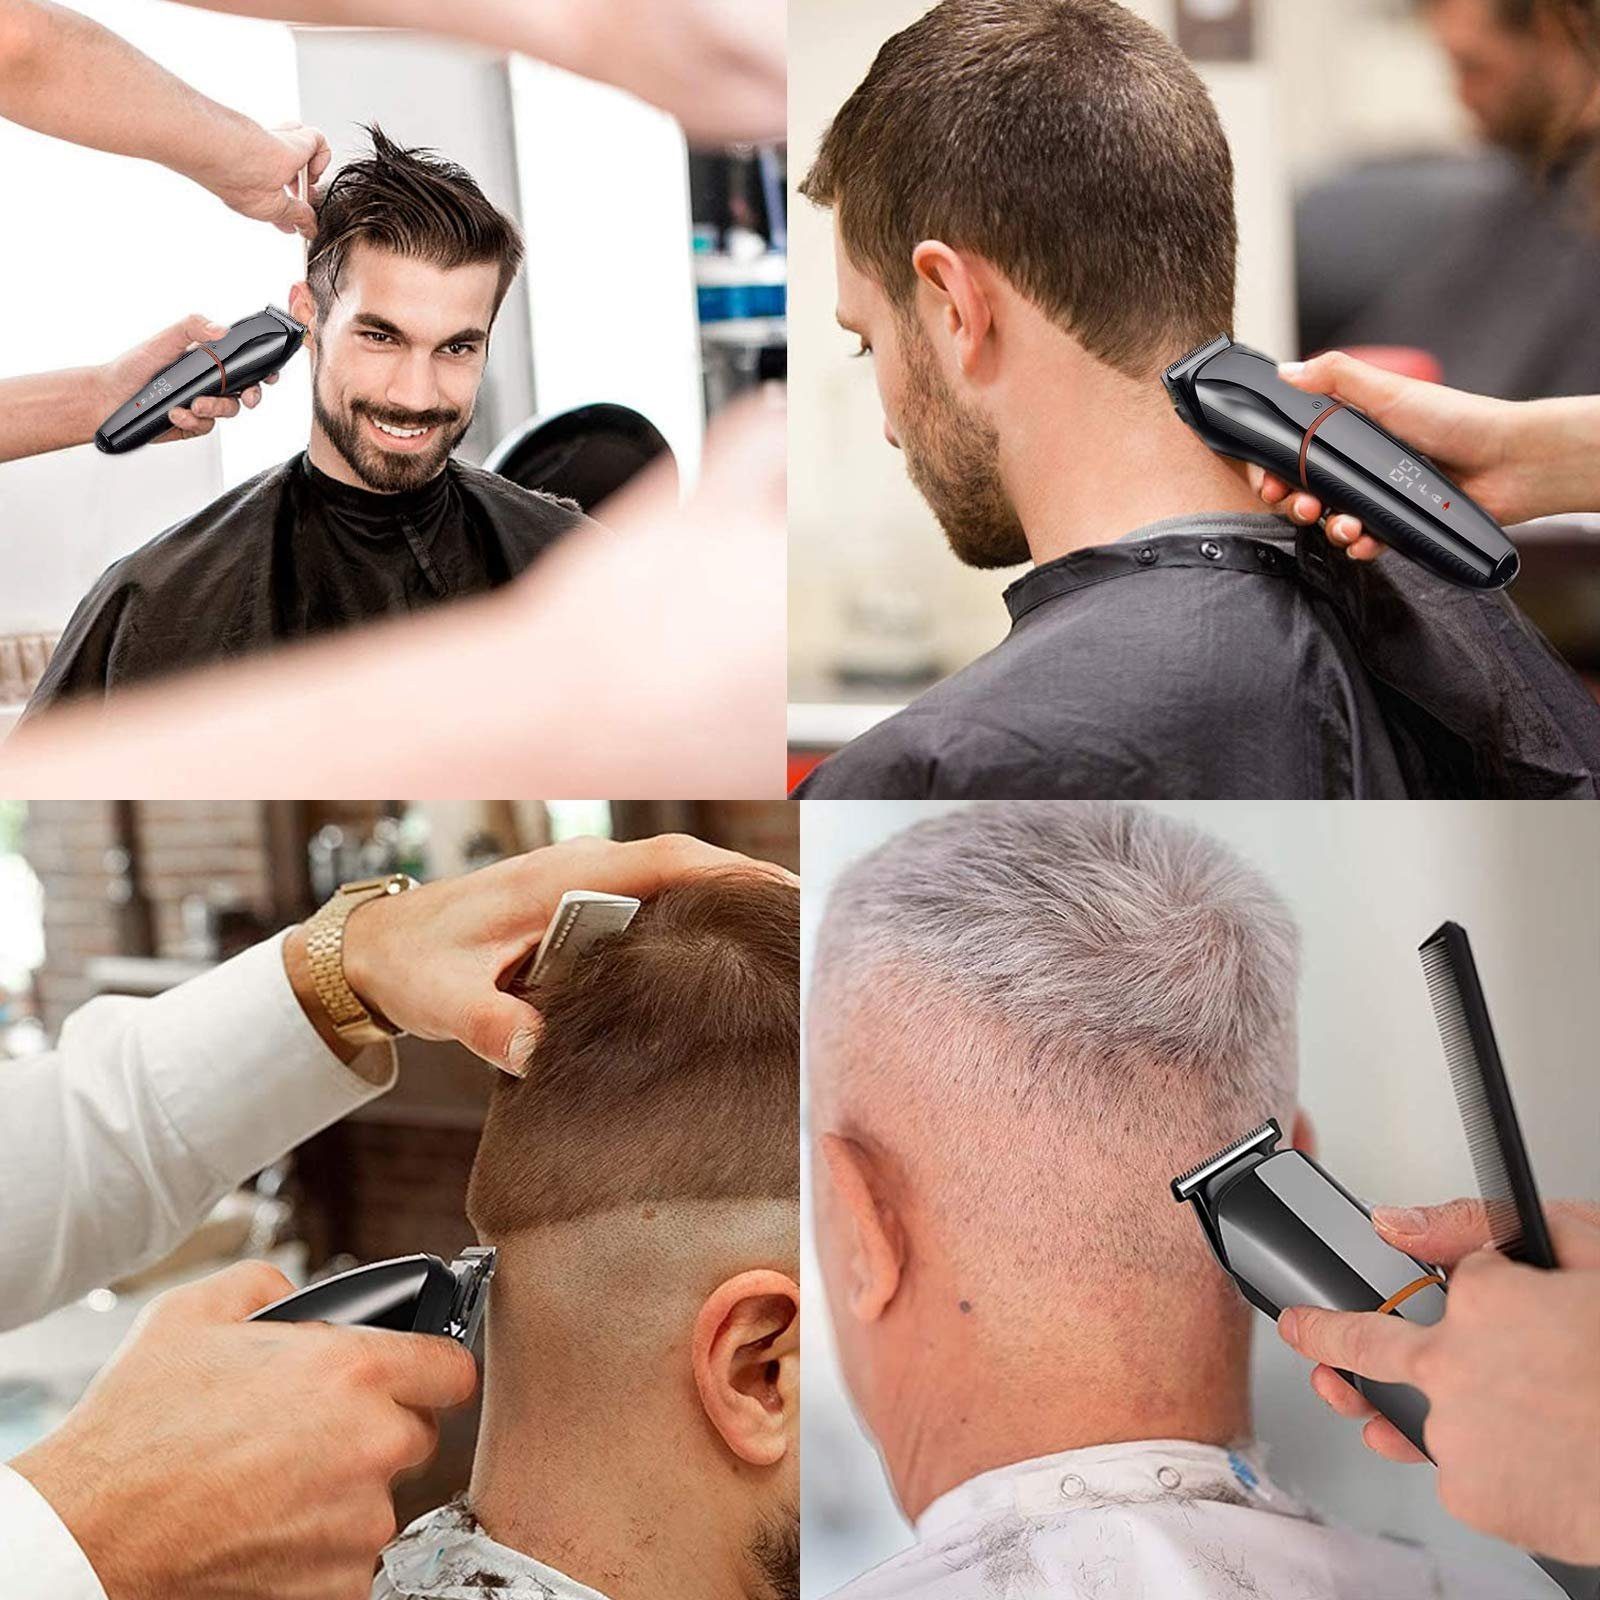 Haarschneider Haiaveng Herren, 1 6 Haarschneider Trimmer/Haarschneider Langhaarschneider Trimmer Männer Profi In Haarschneidemaschine Wasserdicht